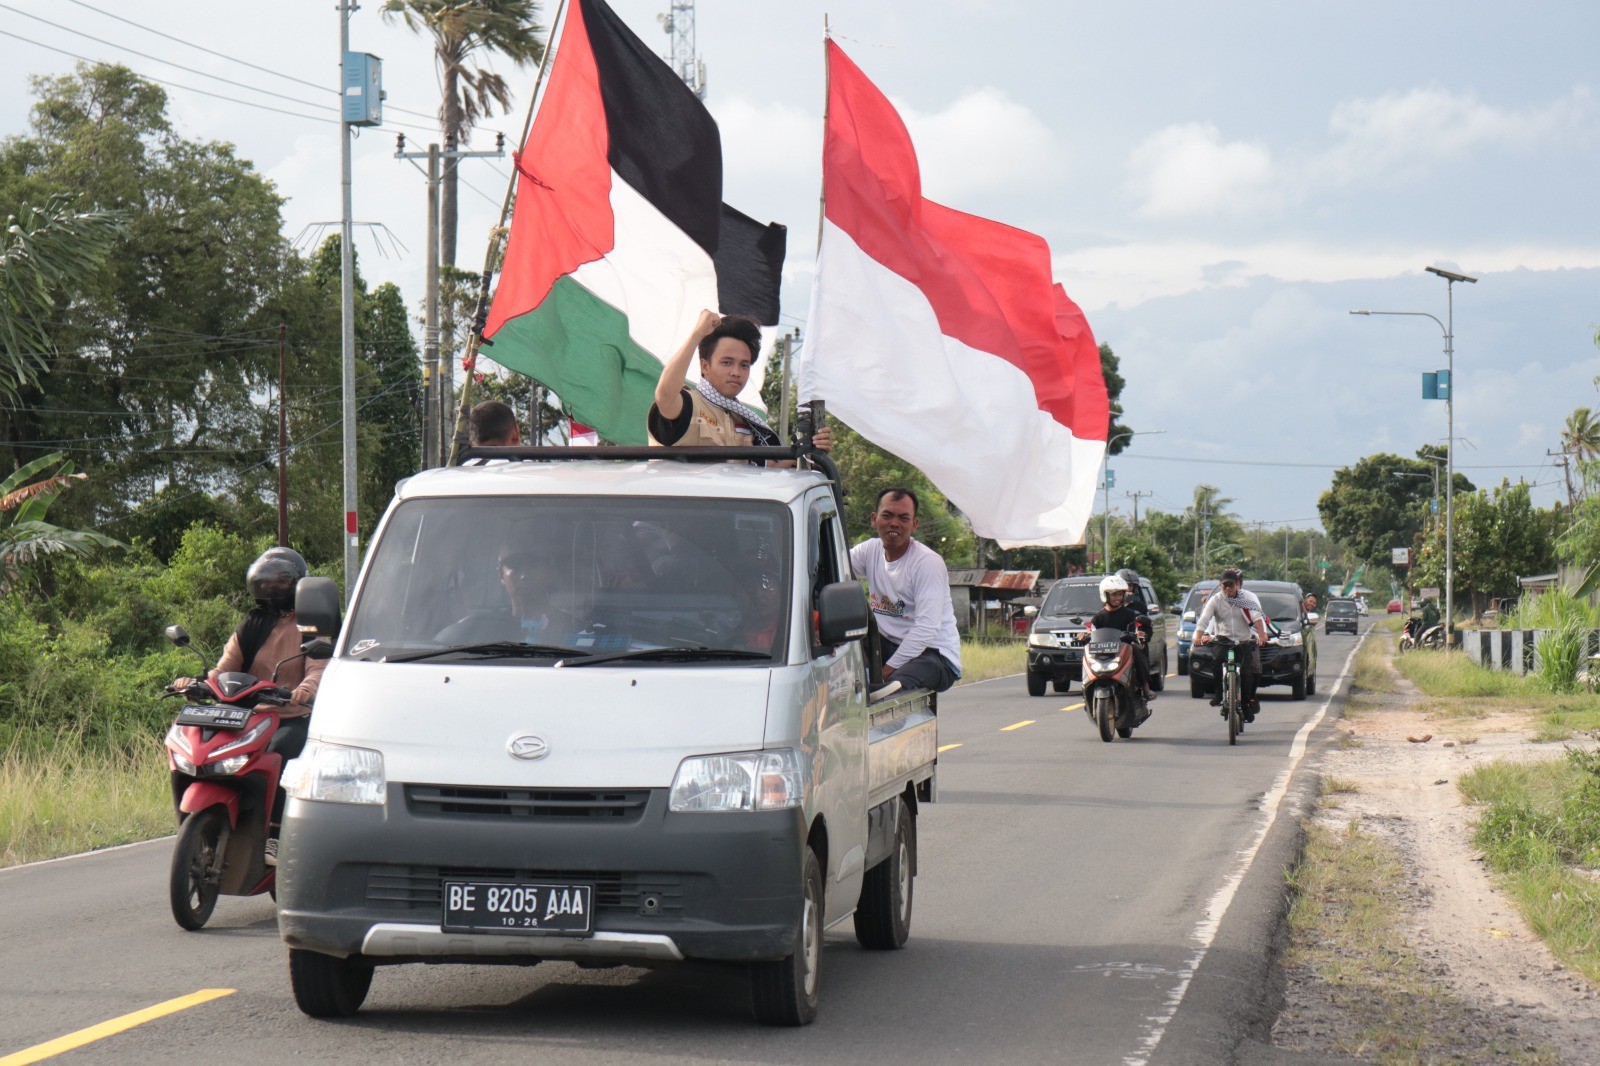 فعاليات كثيرة للتضامن مع أهل فلسطين في اندونيسيا  4.jpg